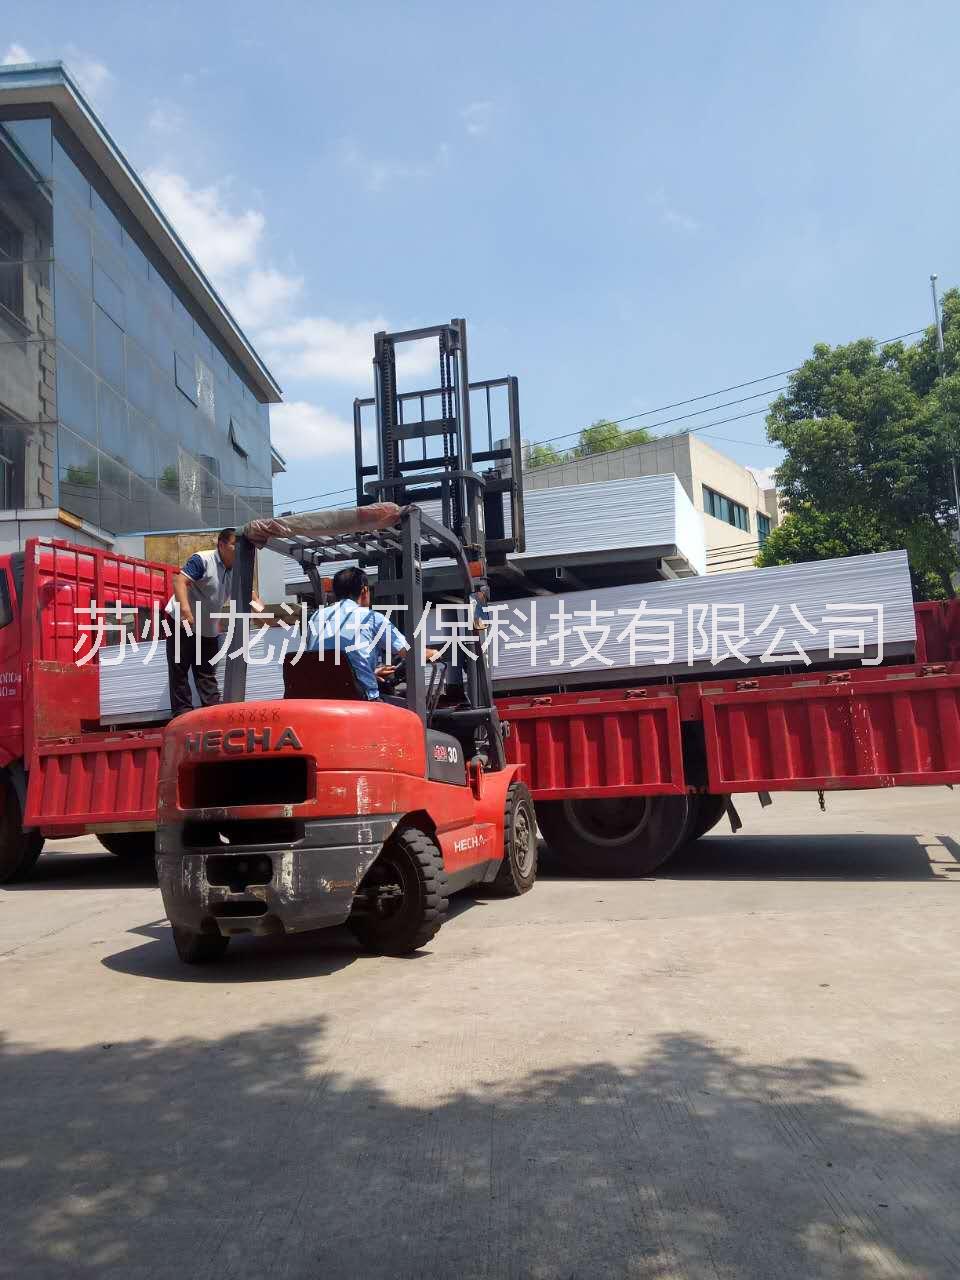 无锡市上海PP阻燃板厂家上海PP阻燃板价格 上海A级PP阻燃板生产厂家最新报价